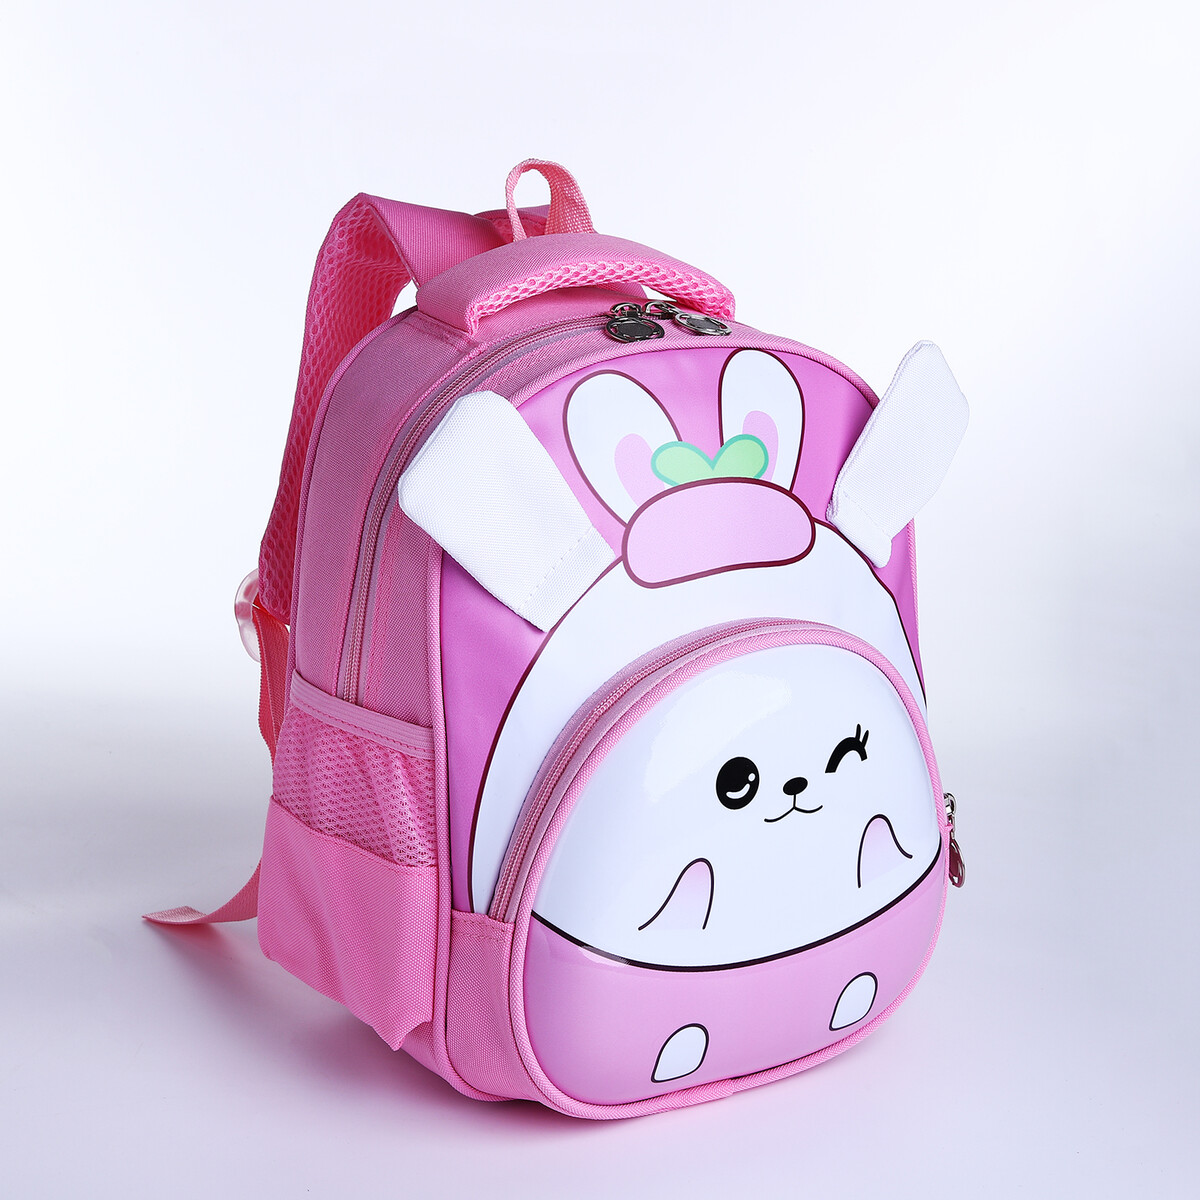 Рюкзак детский на молнии, 3 наружных кармана, цвет розовый рюкзак детский на молнии 3 наружных кармана сиреневый